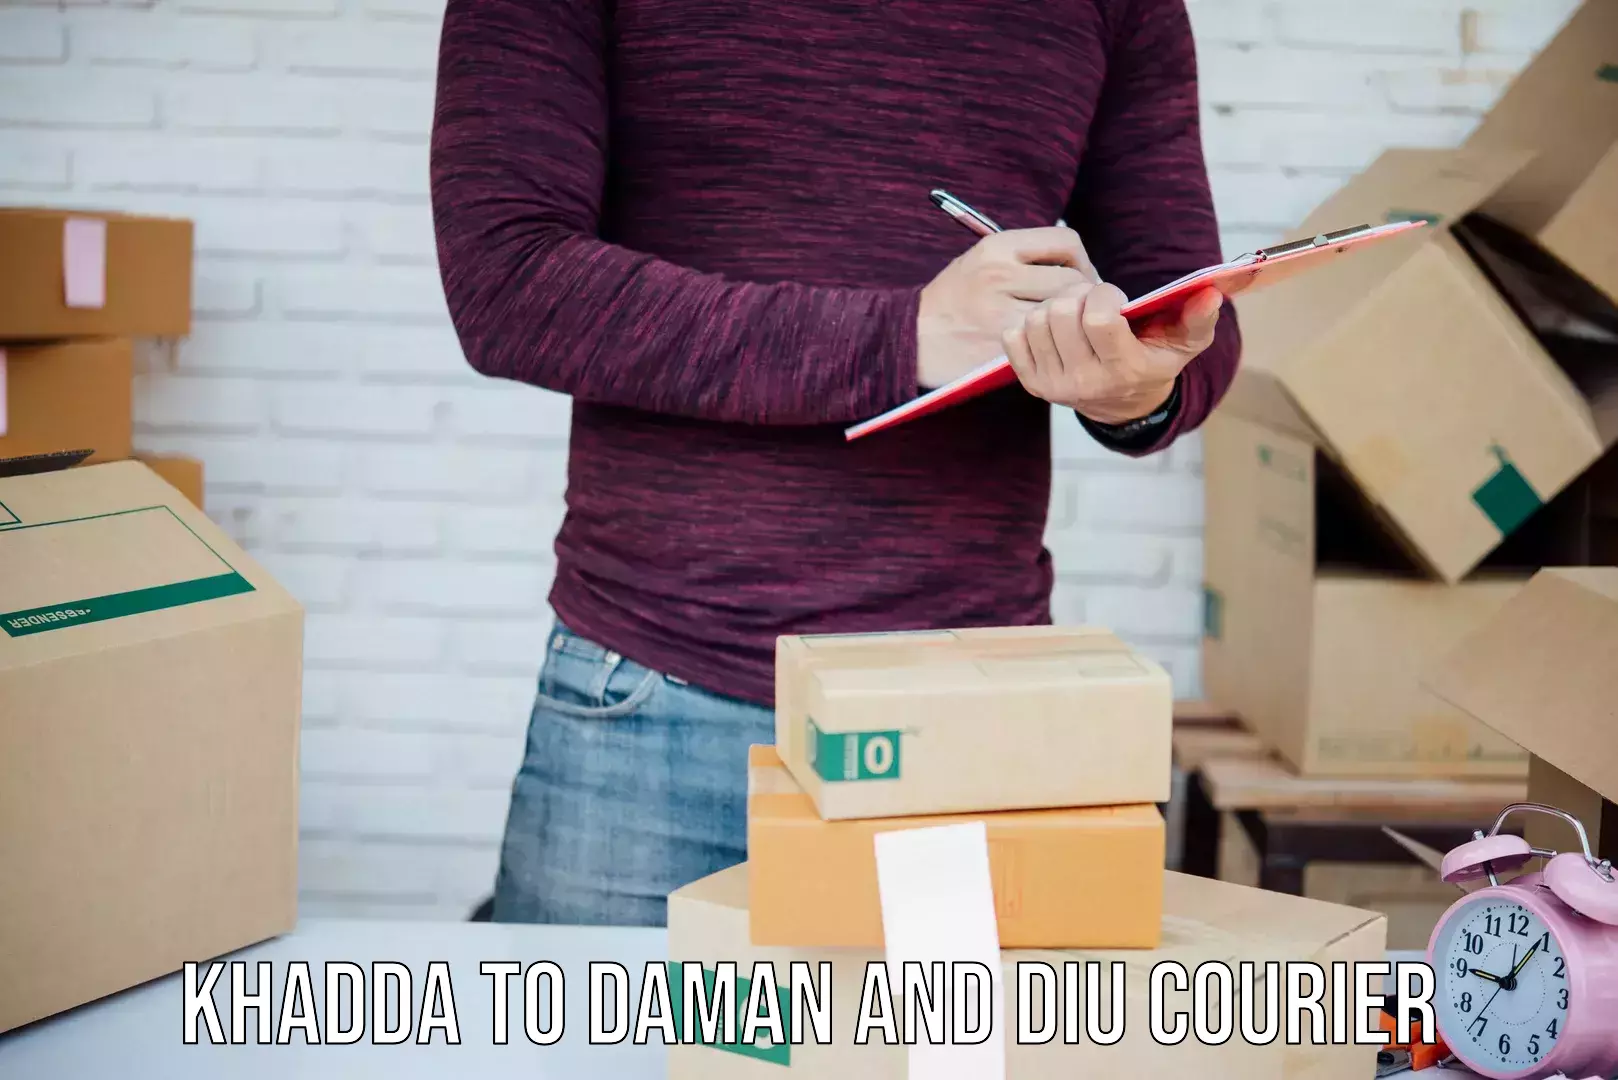 Domestic courier Khadda to Daman and Diu